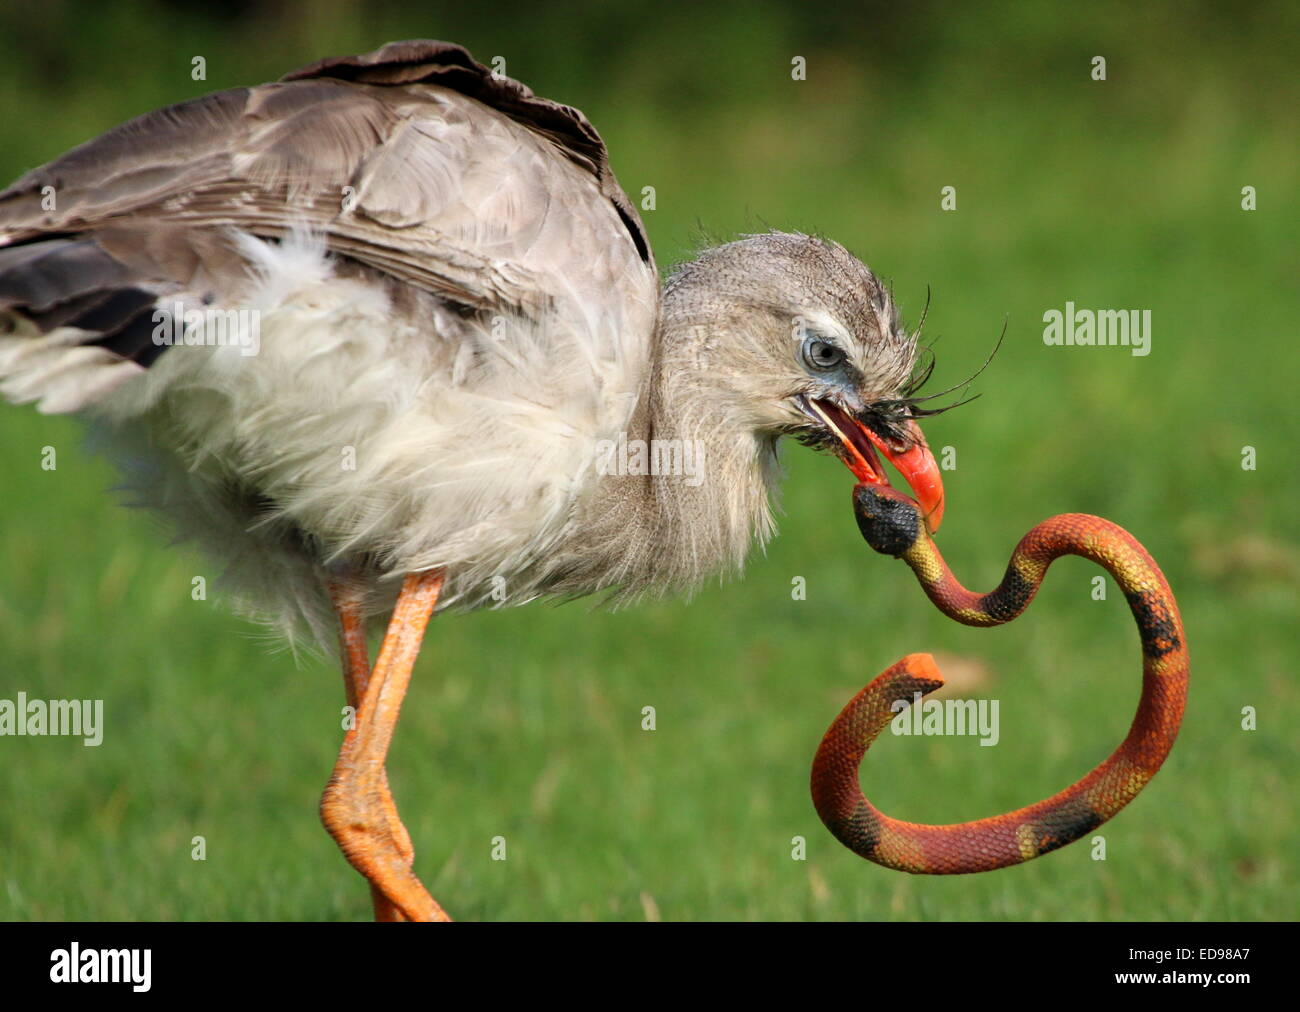 Sudamericano de patas rojas o seriema (Cariama cristata Cariama crestado) ocupado "matar" una serpiente de juguete de plástico durante un espectáculo de aves Foto de stock